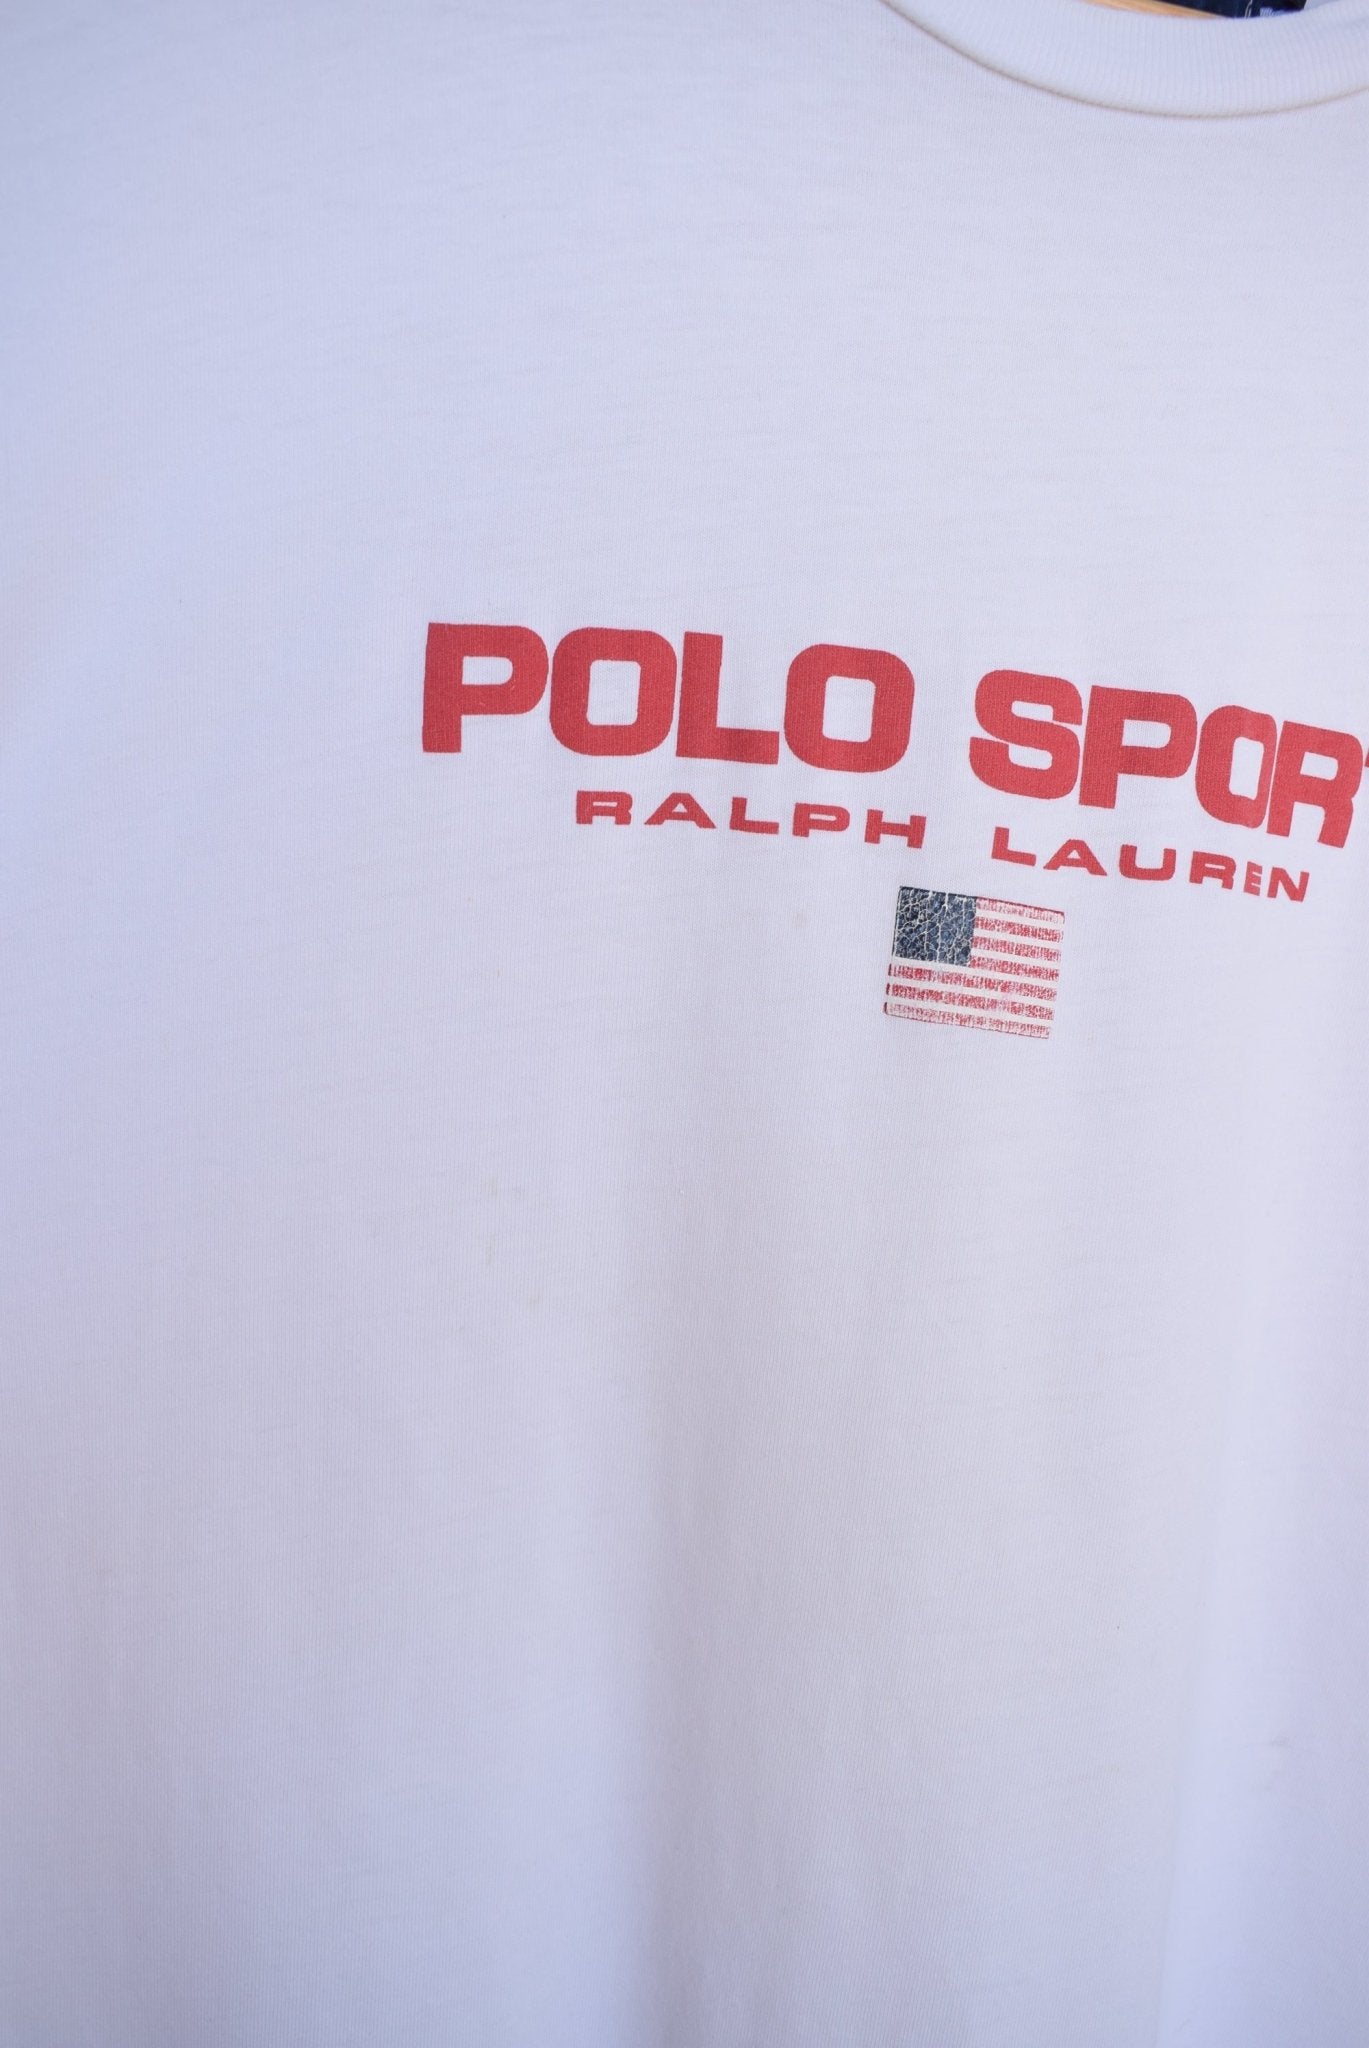 Vintage Polo Sport Ralph Lauren Tee (M/L) - Retrospective Store